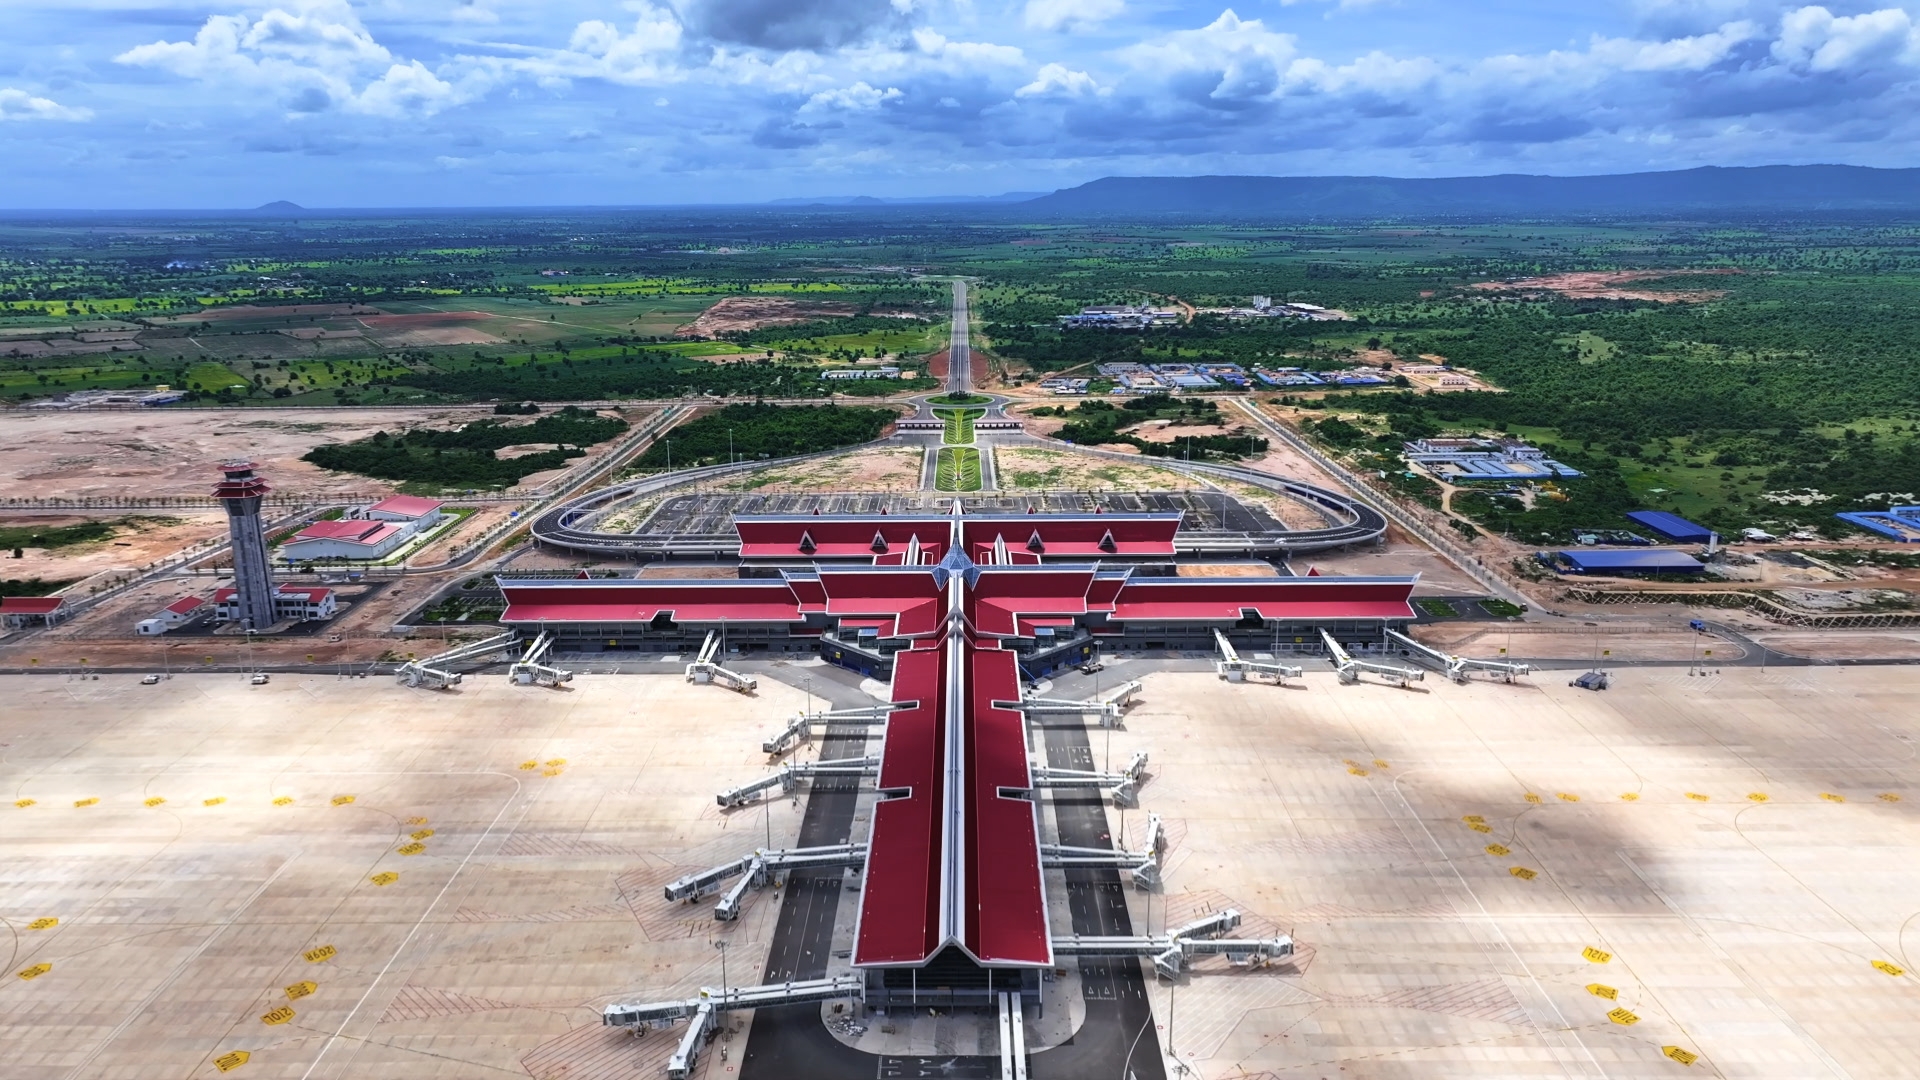 Sân đỗ máy bay tại sân bay Siem Reap-Angkor (Campuchia)